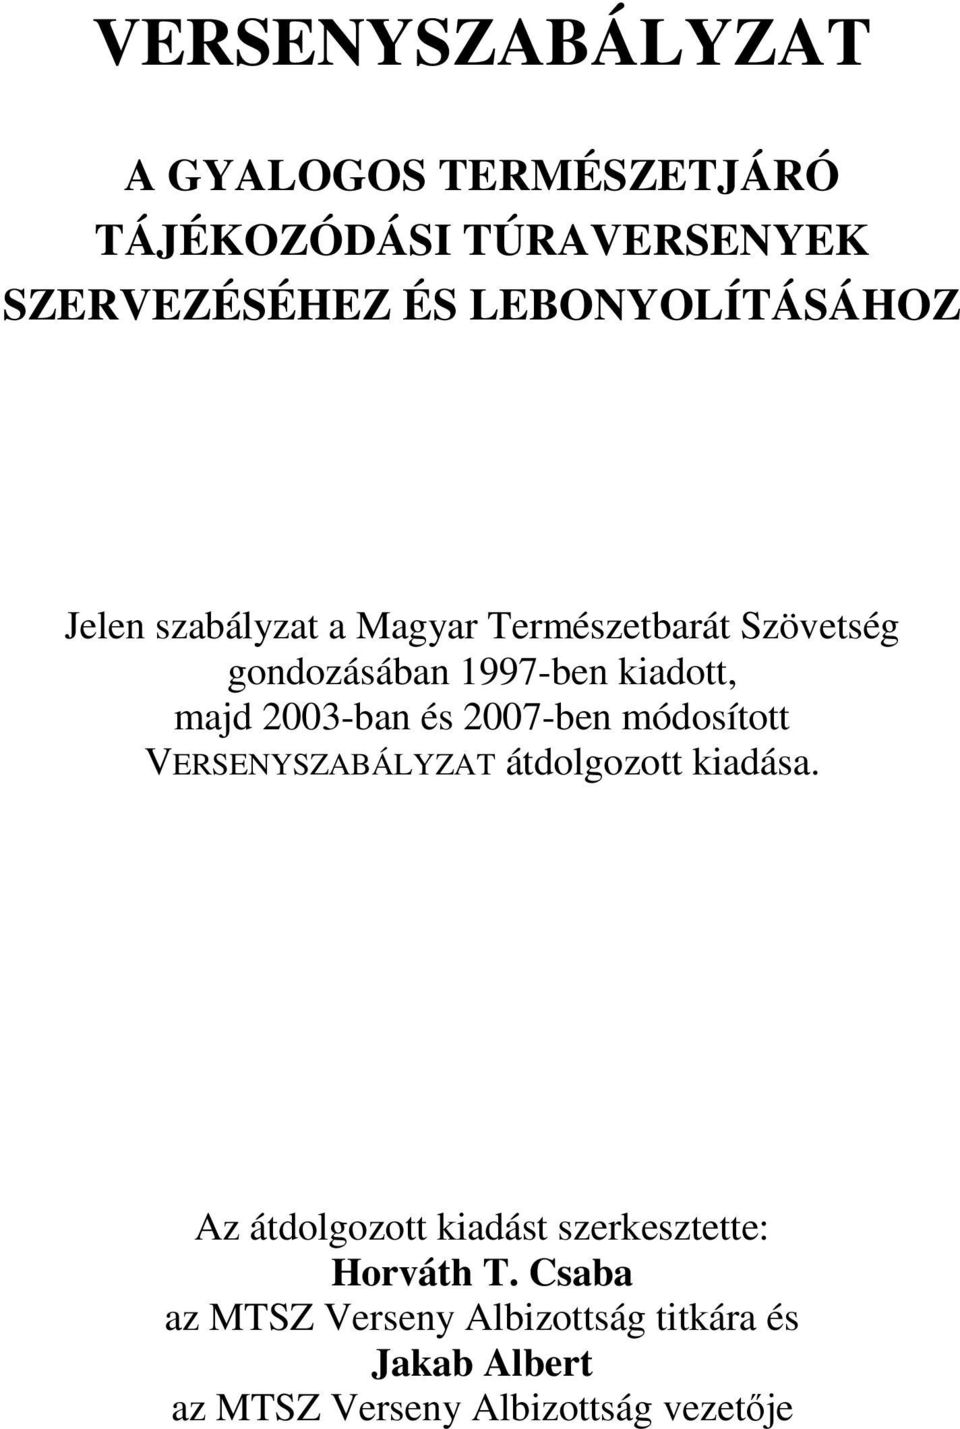 majd 2003-ban és 2007-ben módosított VERSENYSZABÁLYZAT átdolgozott kiadása.